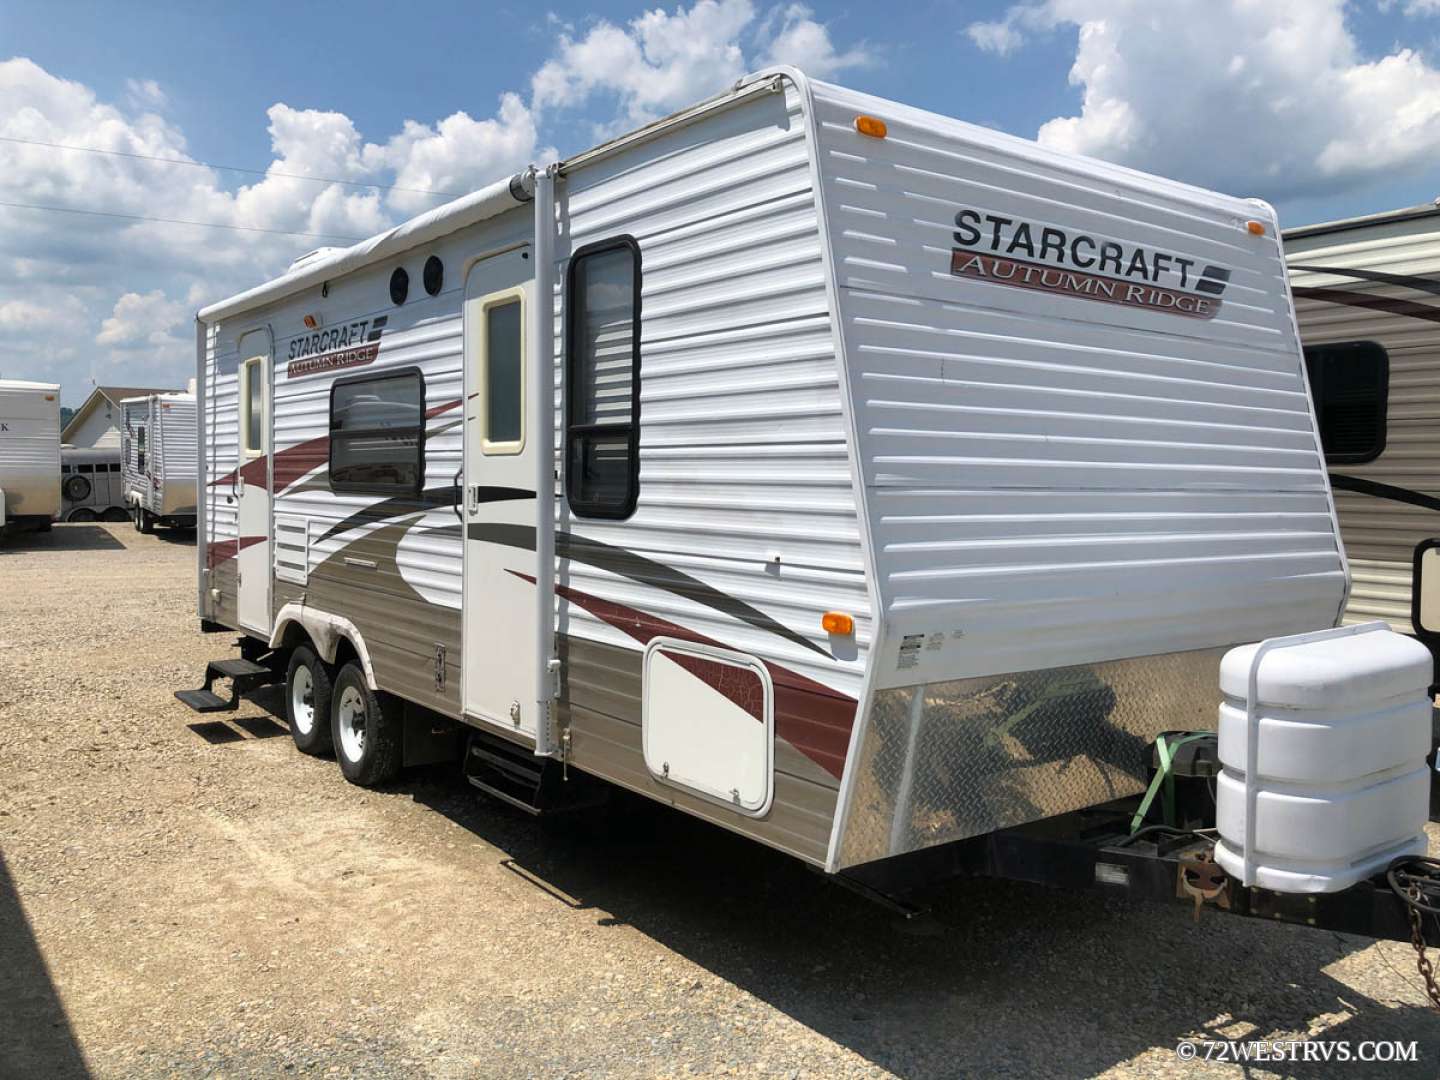 2009 starcraft travel trailer